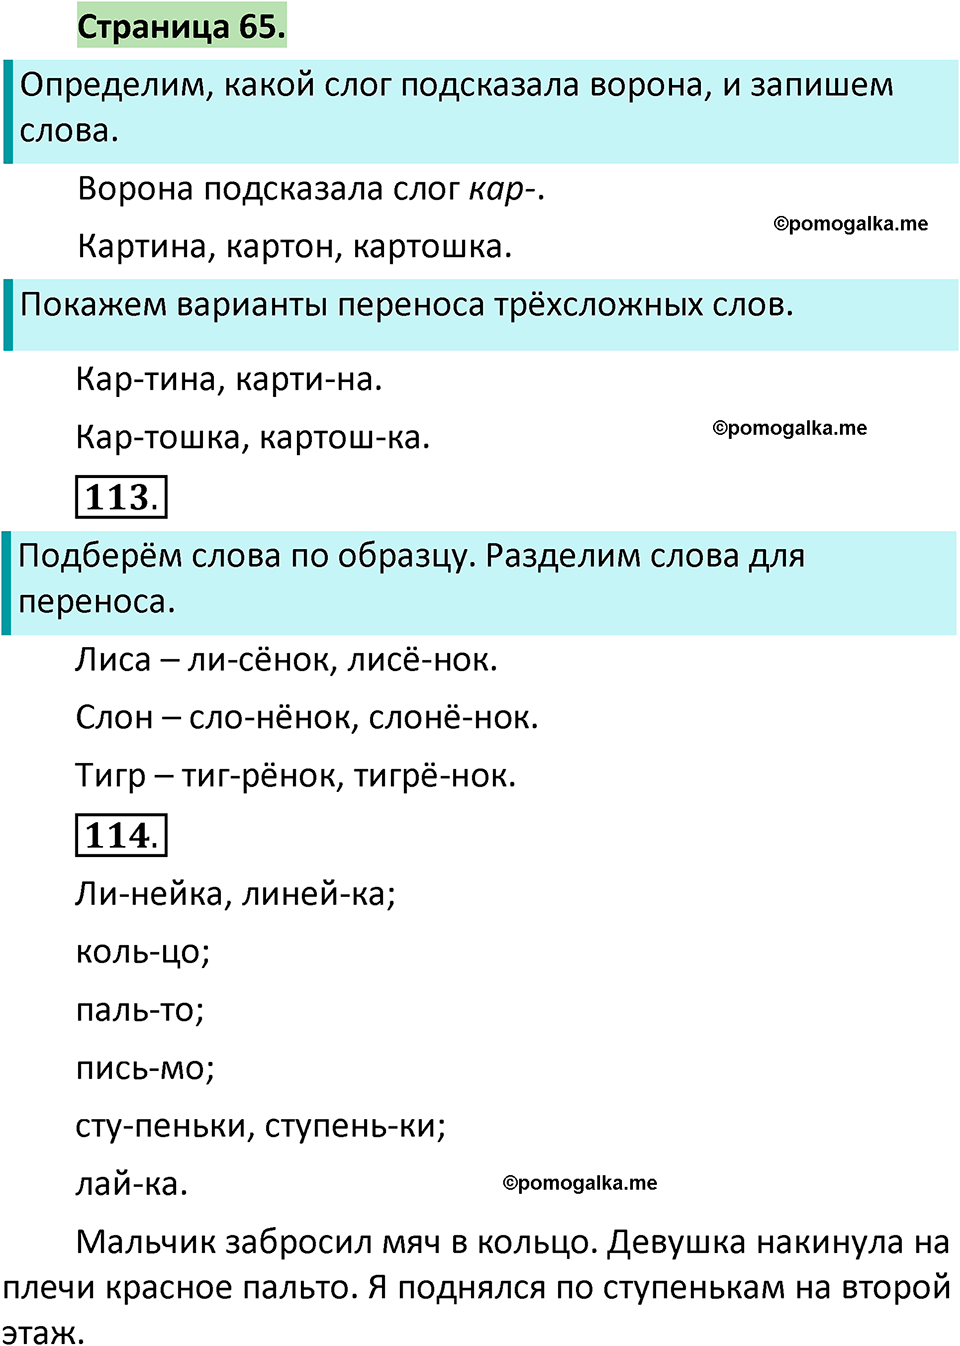 страница 65 русский язык 1 класс Климанова 2022